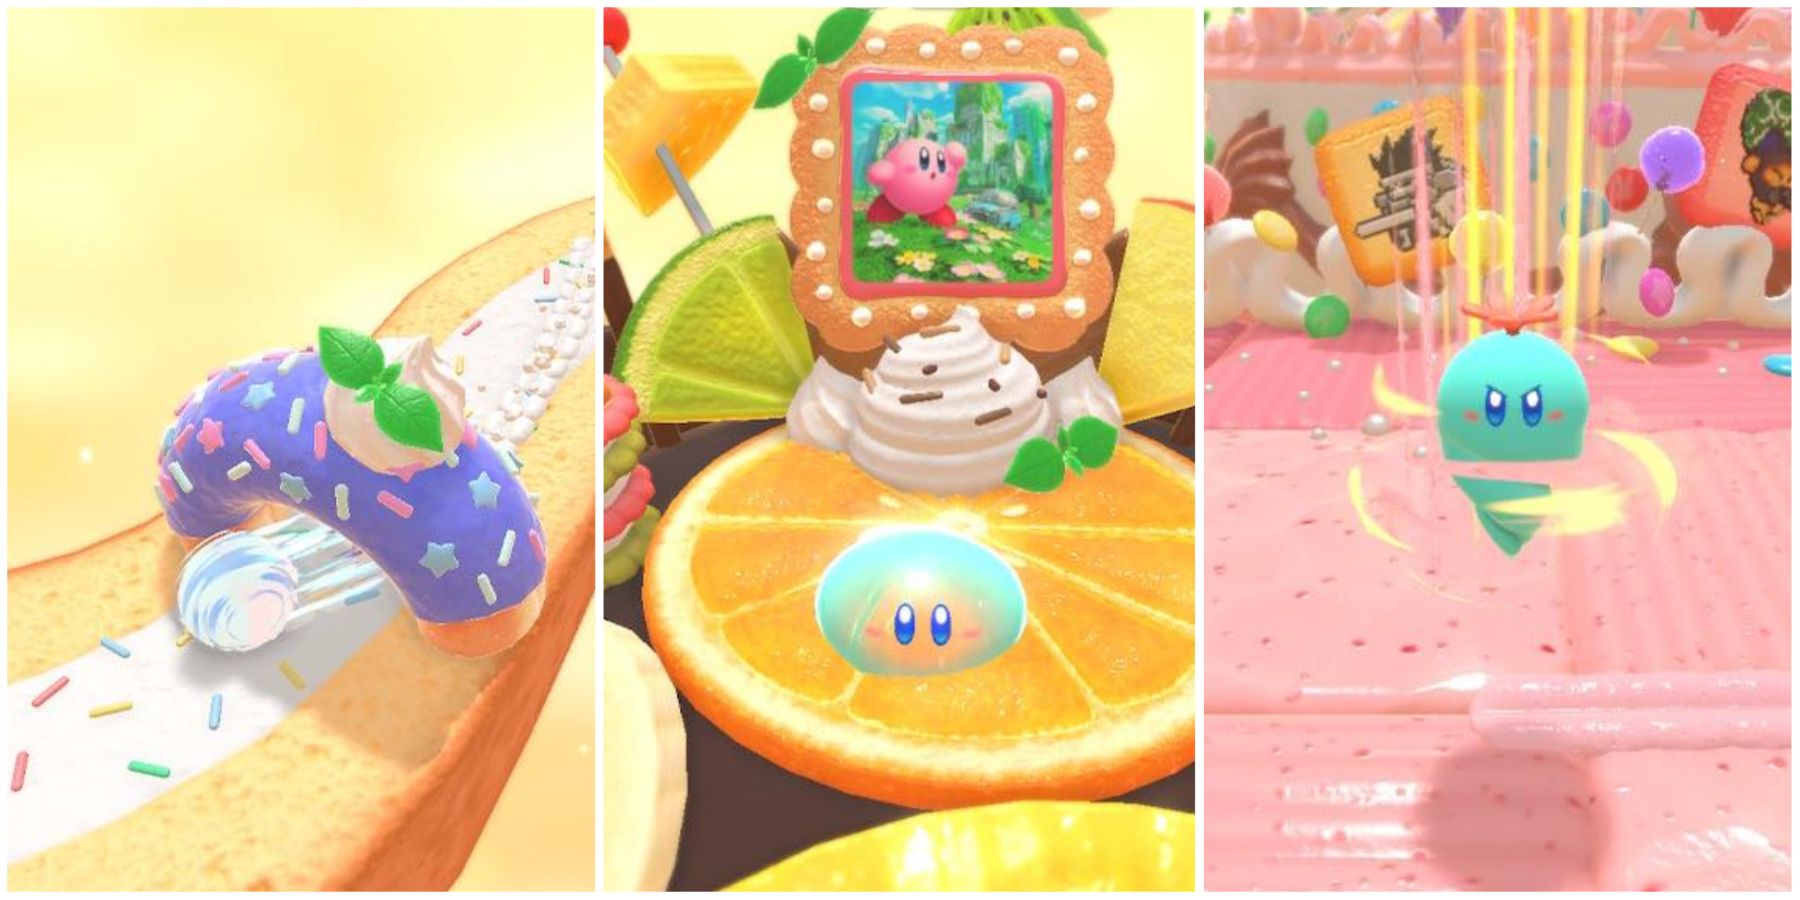 Избранное изображение рейтинговых способностей копирования Kirby's Dream Buffet